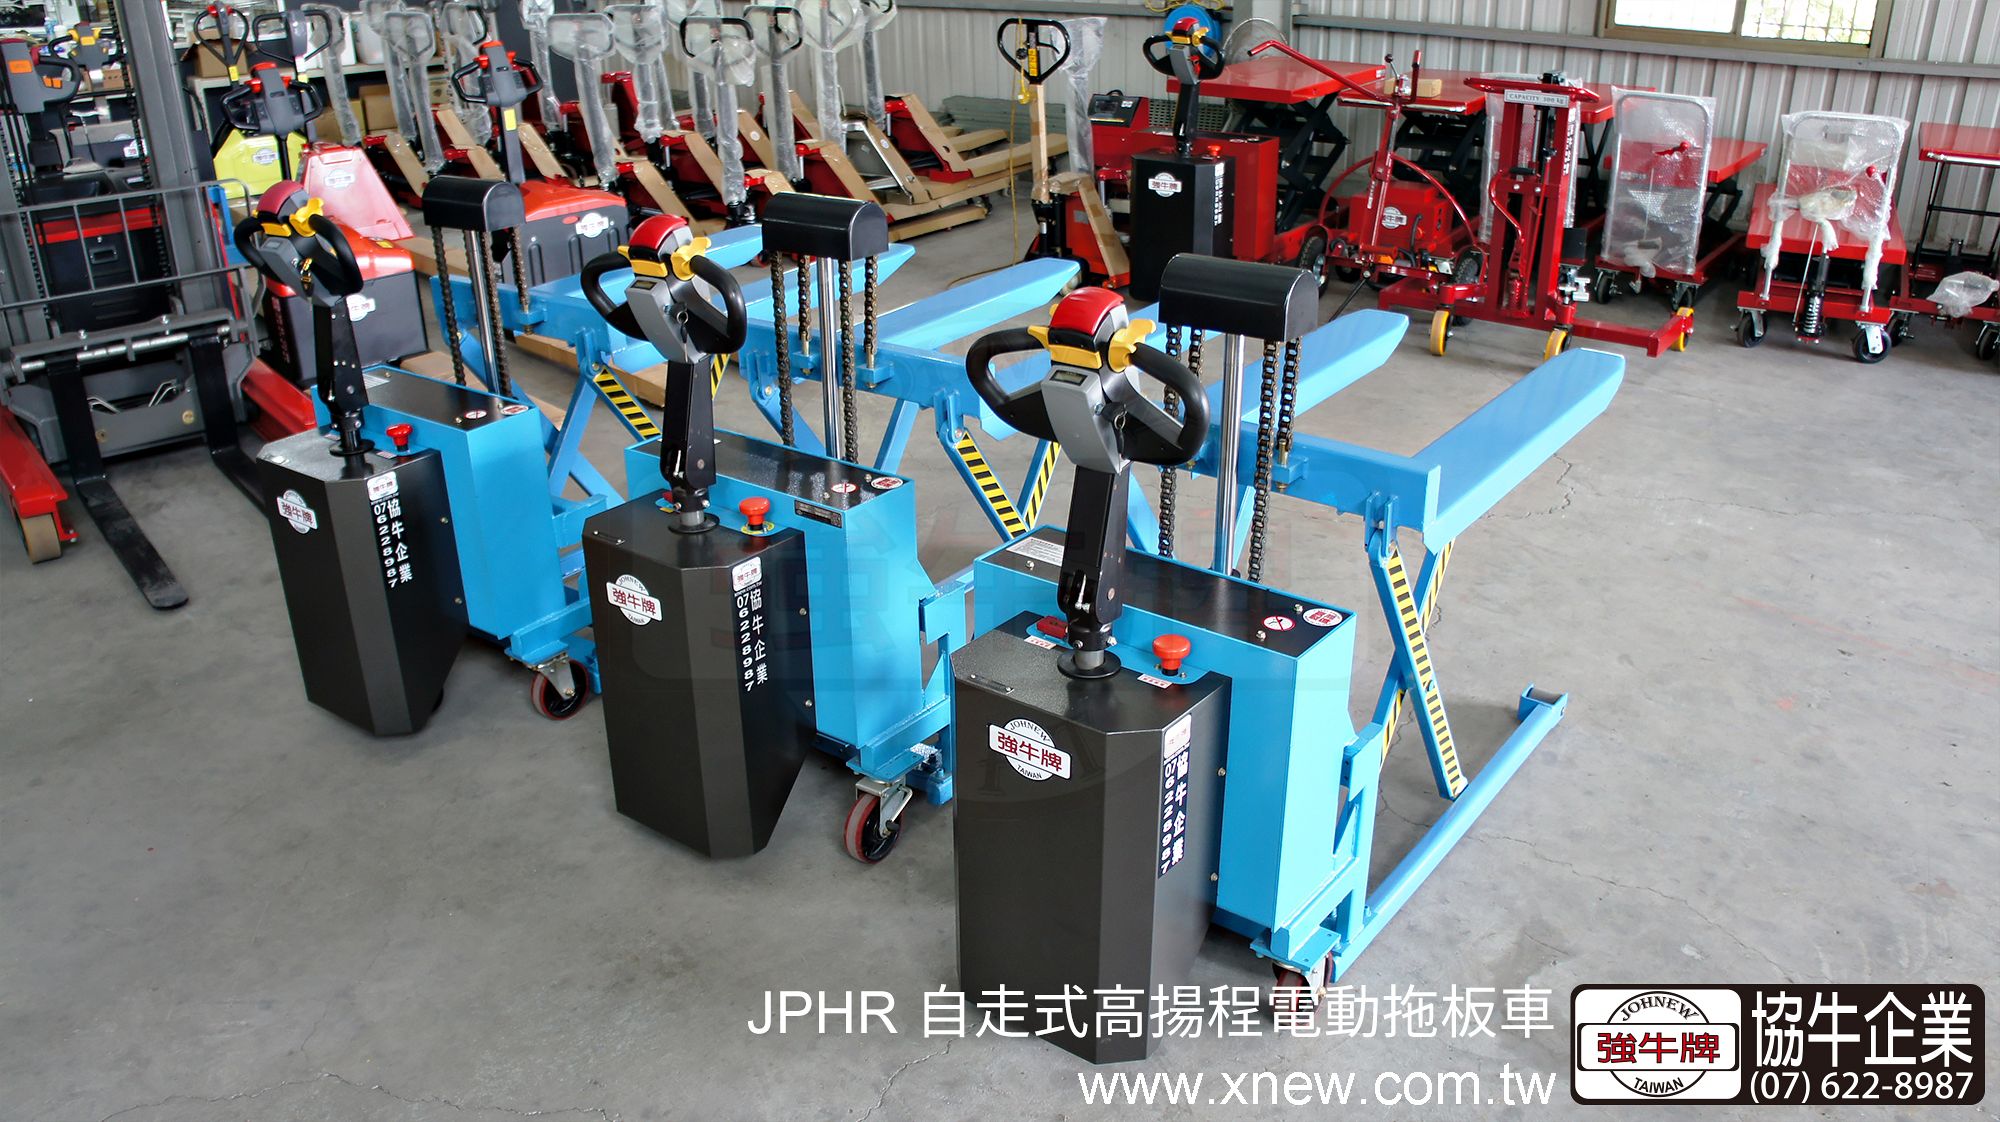 強牛牌JPHR自走式高揚程電動拖板車, 藍色後面展示, 操作桿及井及開關展示